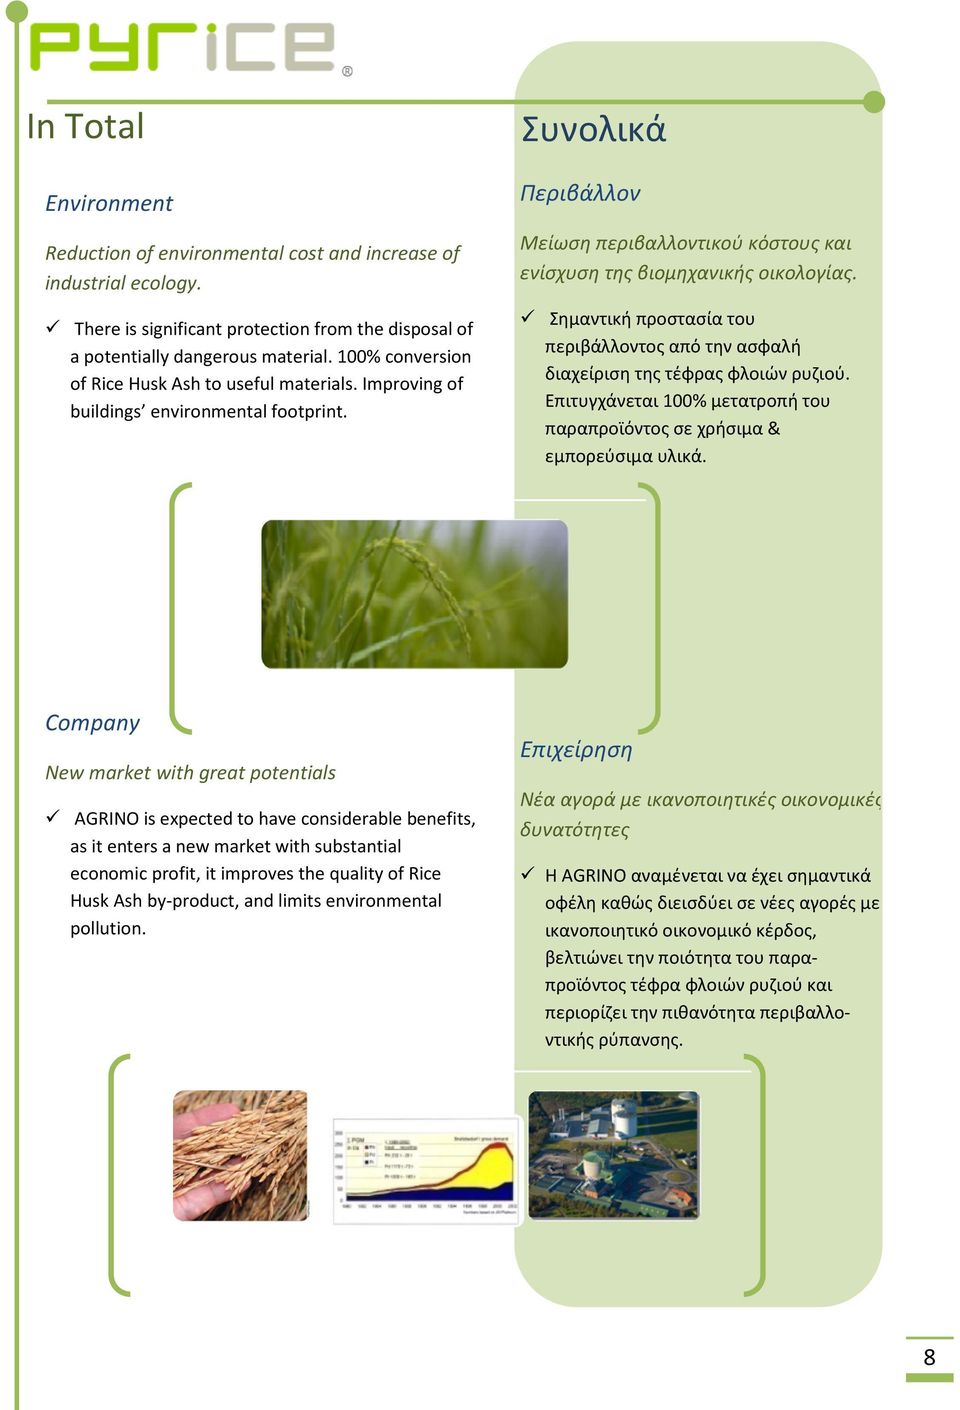 Σημαντική προστασία του περιβάλλοντος από την ασφαλή διαχείριση της τέφρας φλοιών ρυζιού. Επιτυγχάνεται 100% μετατροπή του παραπροϊόντος σε χρήσιμα & εμπορεύσιμα υλικά.